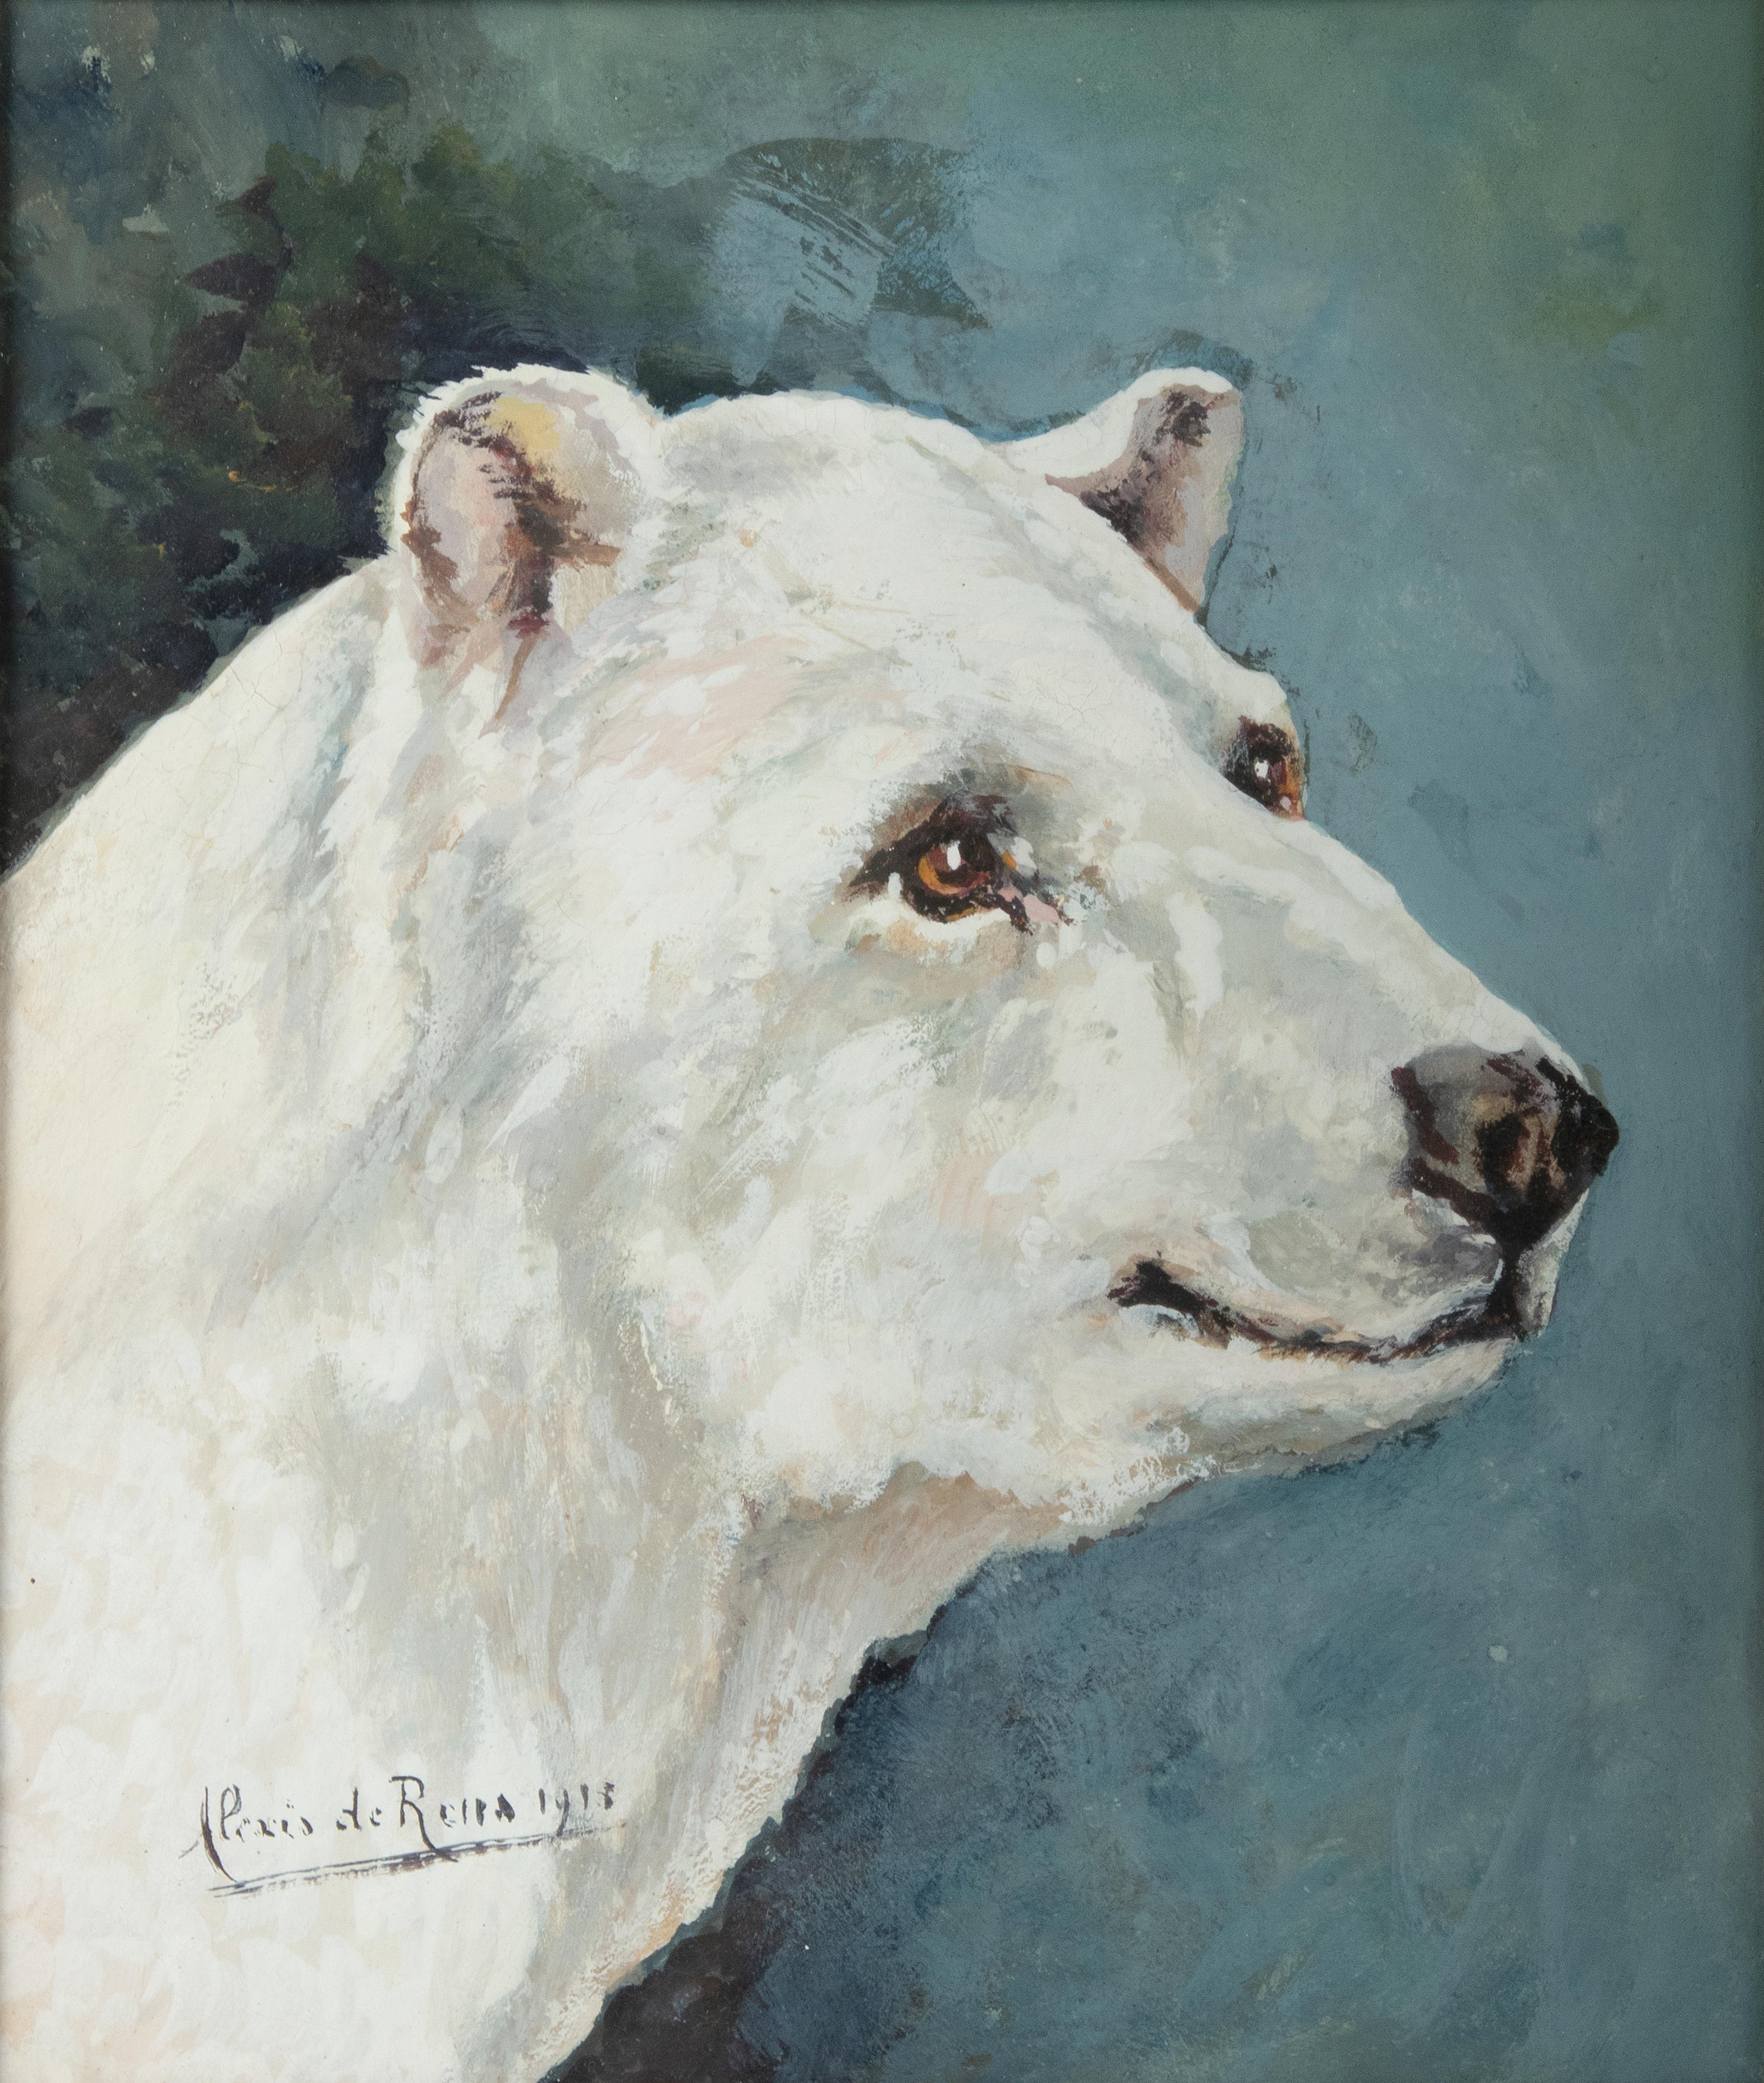 Belle peinture, portrait d'un ours polaire, par l'artiste belge Alexis de Reus. Elle était active au début des années 1900 et peignait principalement des animaux. Le tableau est clairement signé et daté, en bas à droite, de 1913. Cette peinture